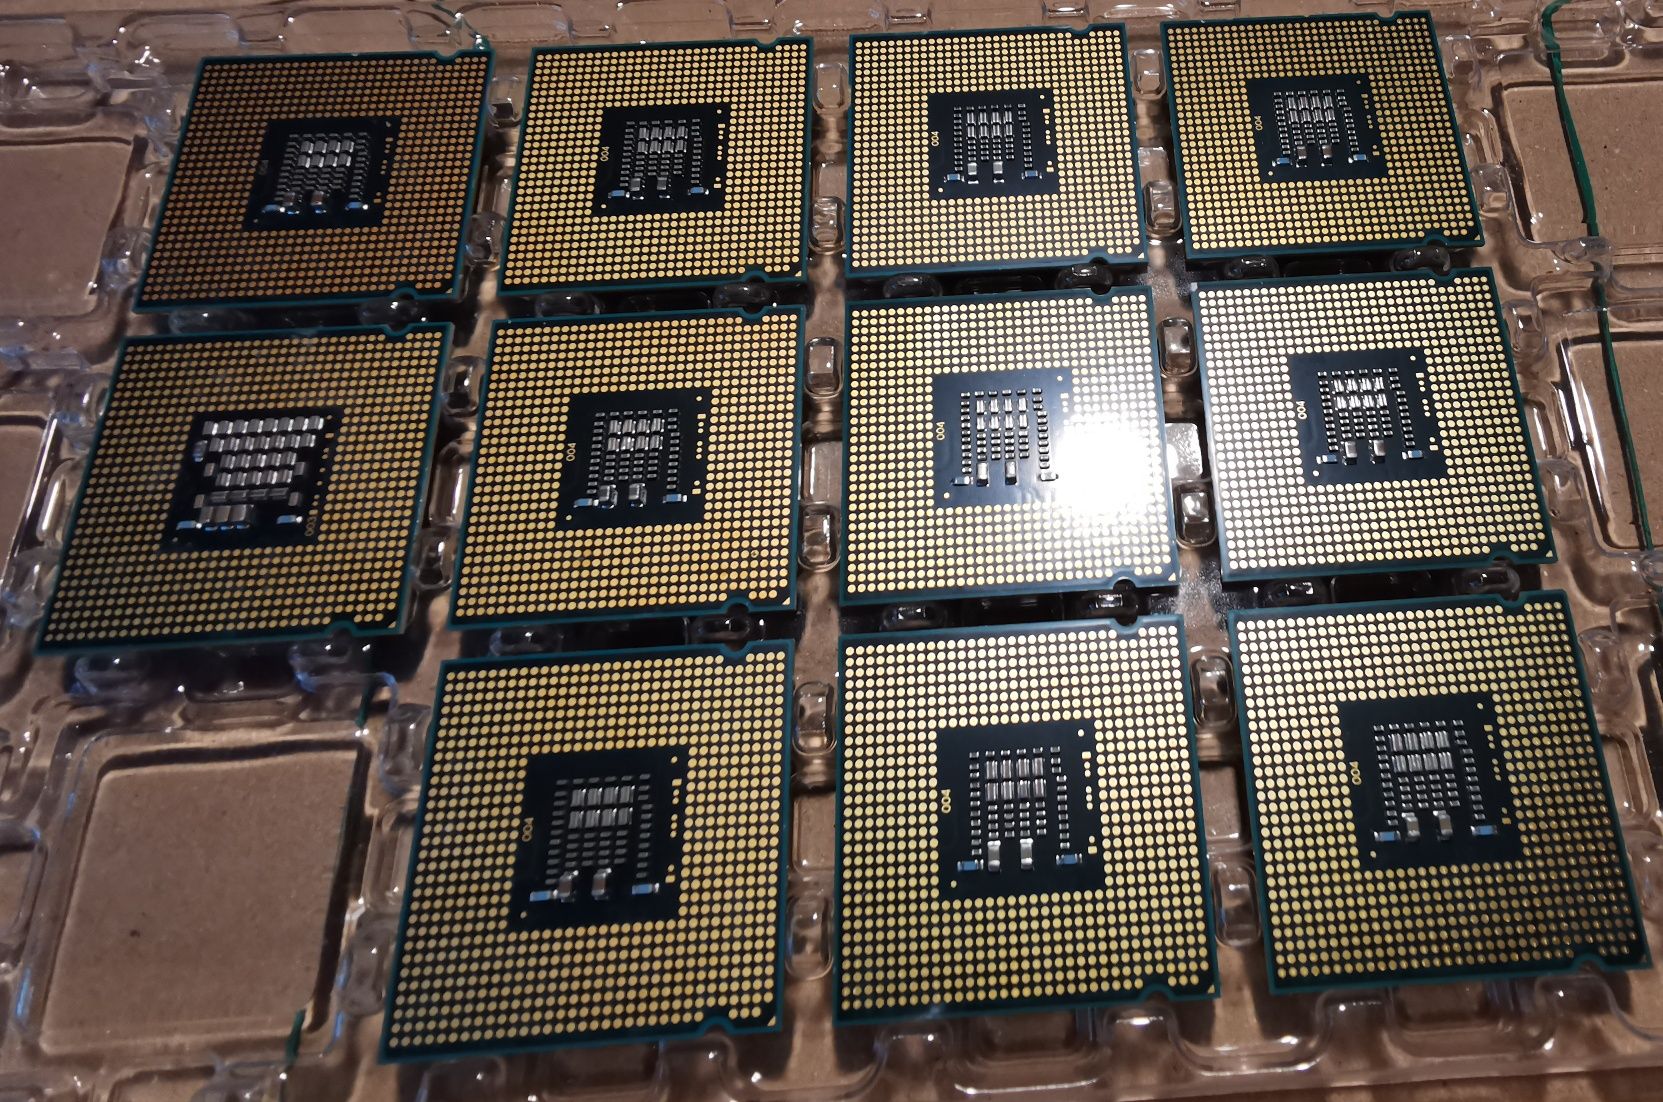 Procesor Intel Pentium și CORE 2DUO,FSB 800-1066,LGA 775,de la 30lei